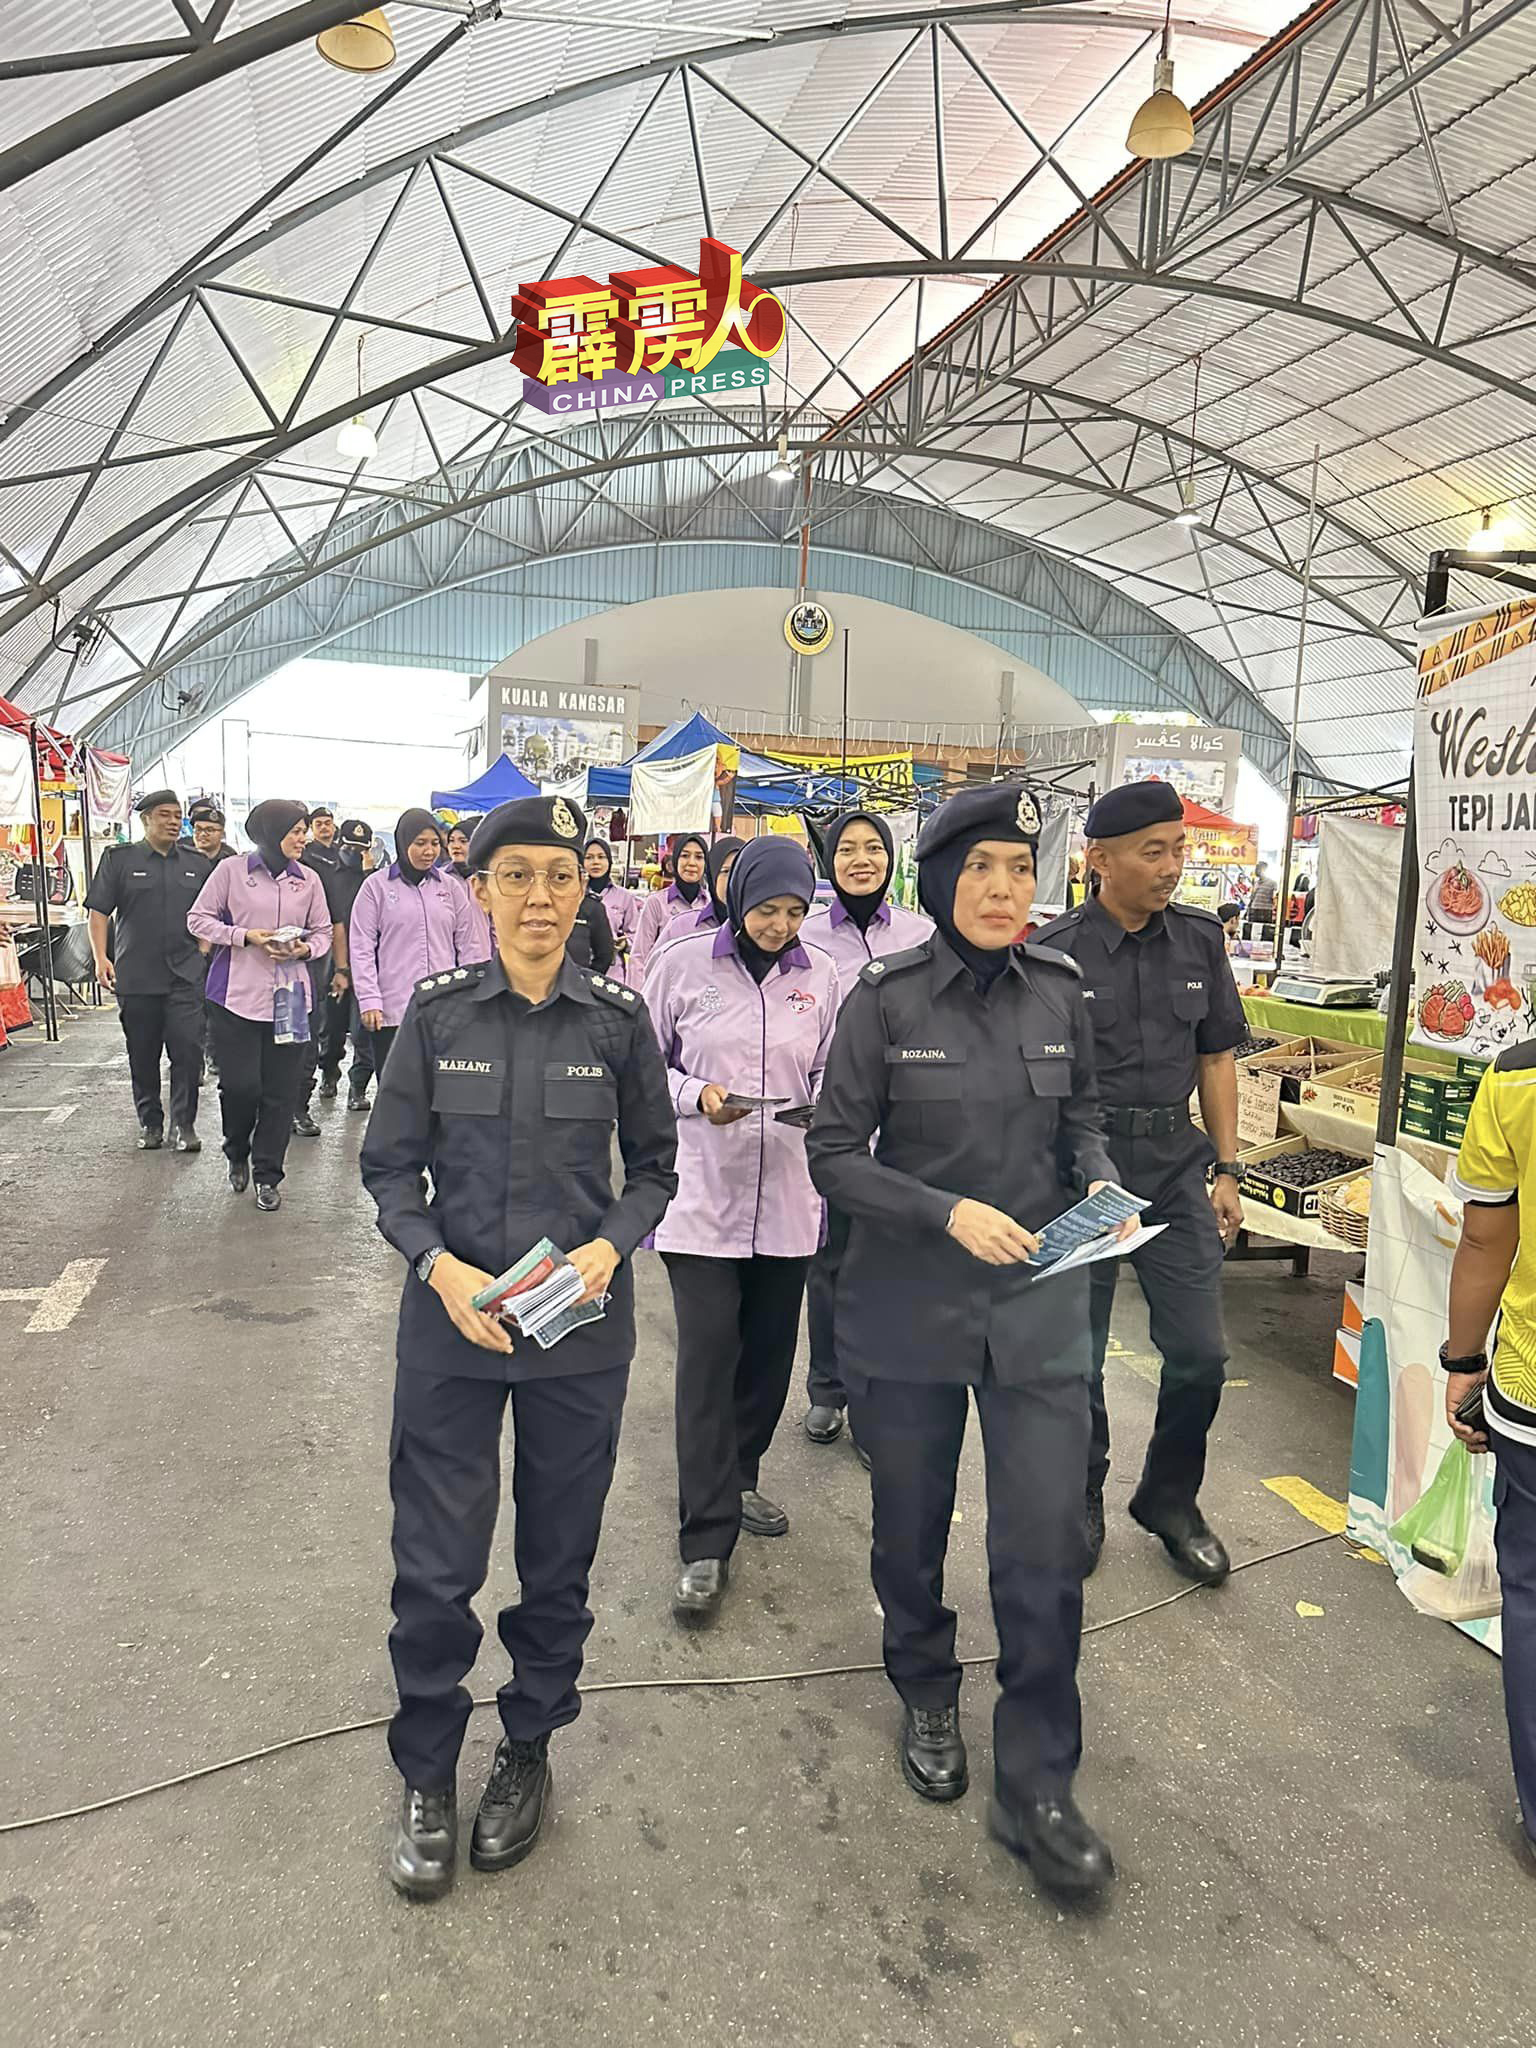 警察在斋戒月市集展开高调警政活动，不仅可负责维护安全，还致力于与当地社区巩固关系。